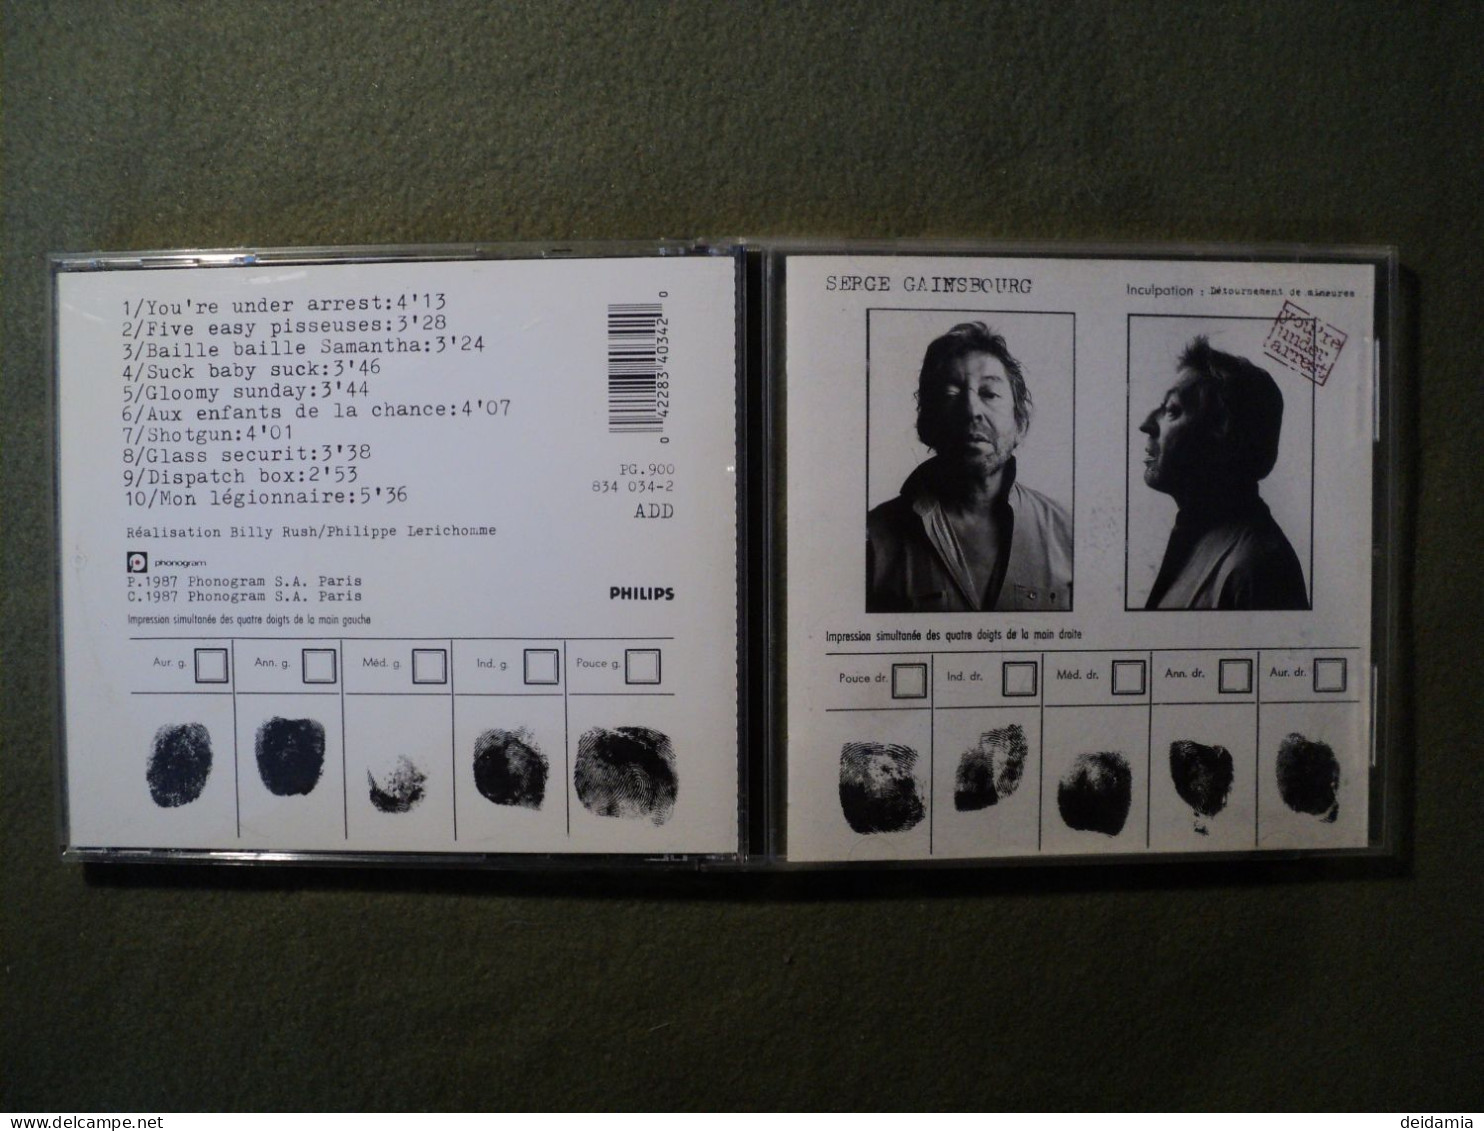 SERGE GAINSBOURG. CD 10 TITRES DE 1987. PHILIPS 834 034 YOU RE UNDER ARREST / FIVE EASY PISSEUSES / BAILLE BAILLE SAMANT - Autres - Musique Française